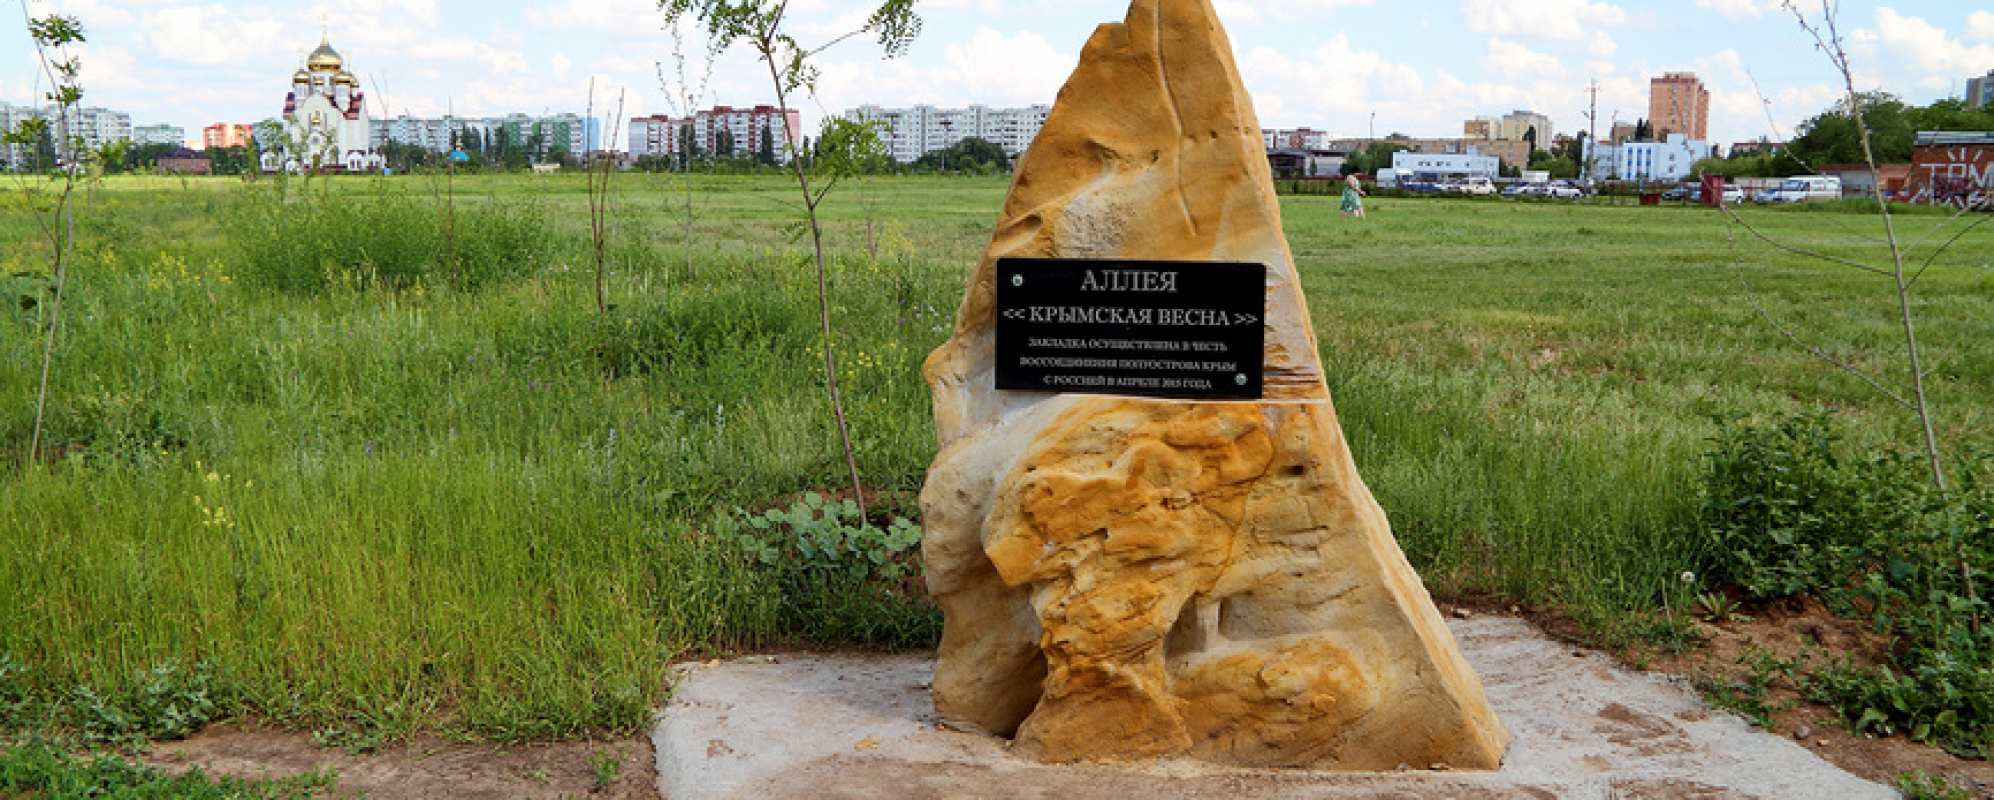 Фотографии памятника Памятный камень закладки аллеи Крымская весна